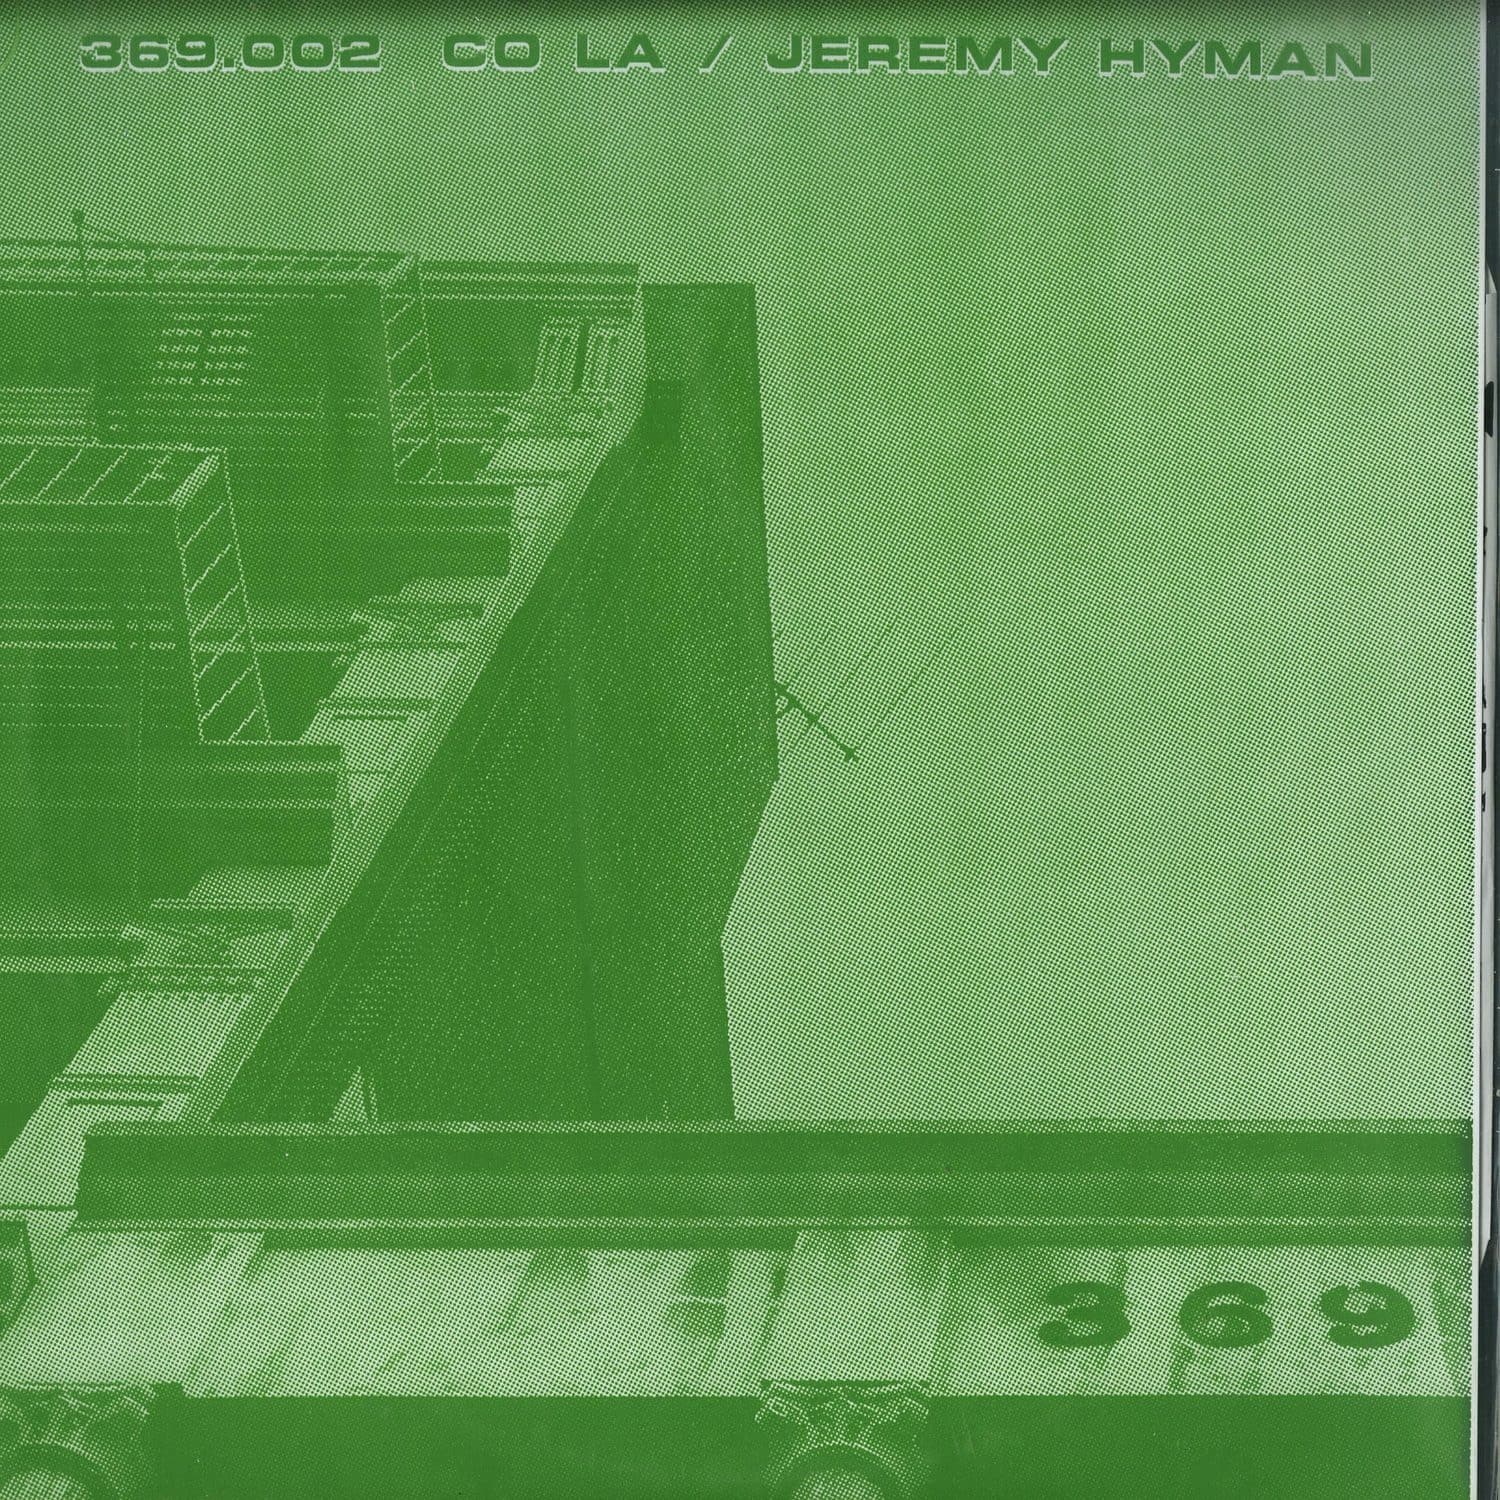 CO LA, Jeremy Hyman - 369.002